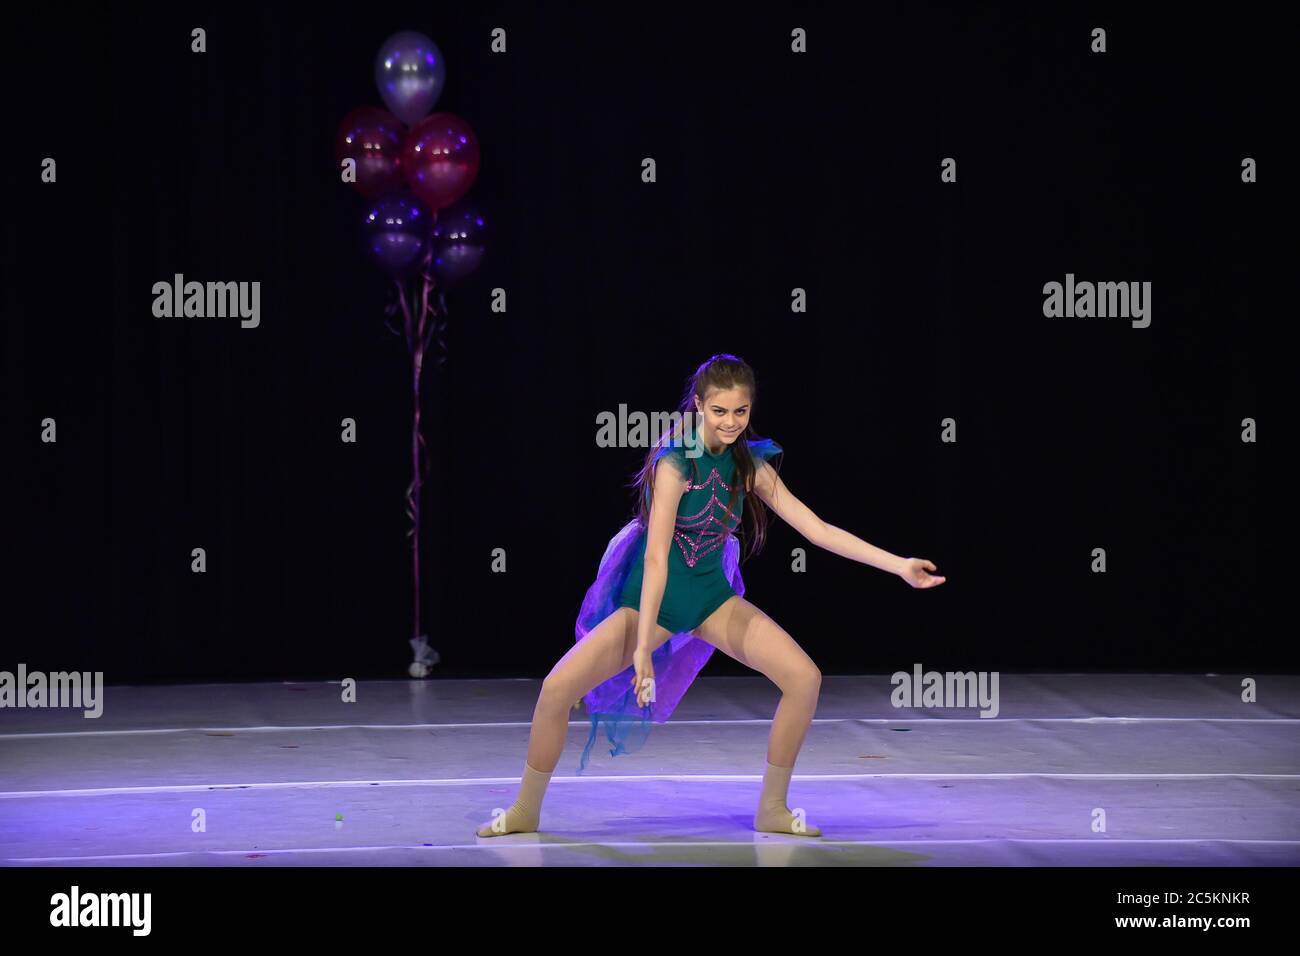 Une jeune adolescente danse moderne sur scène Banque D'Images